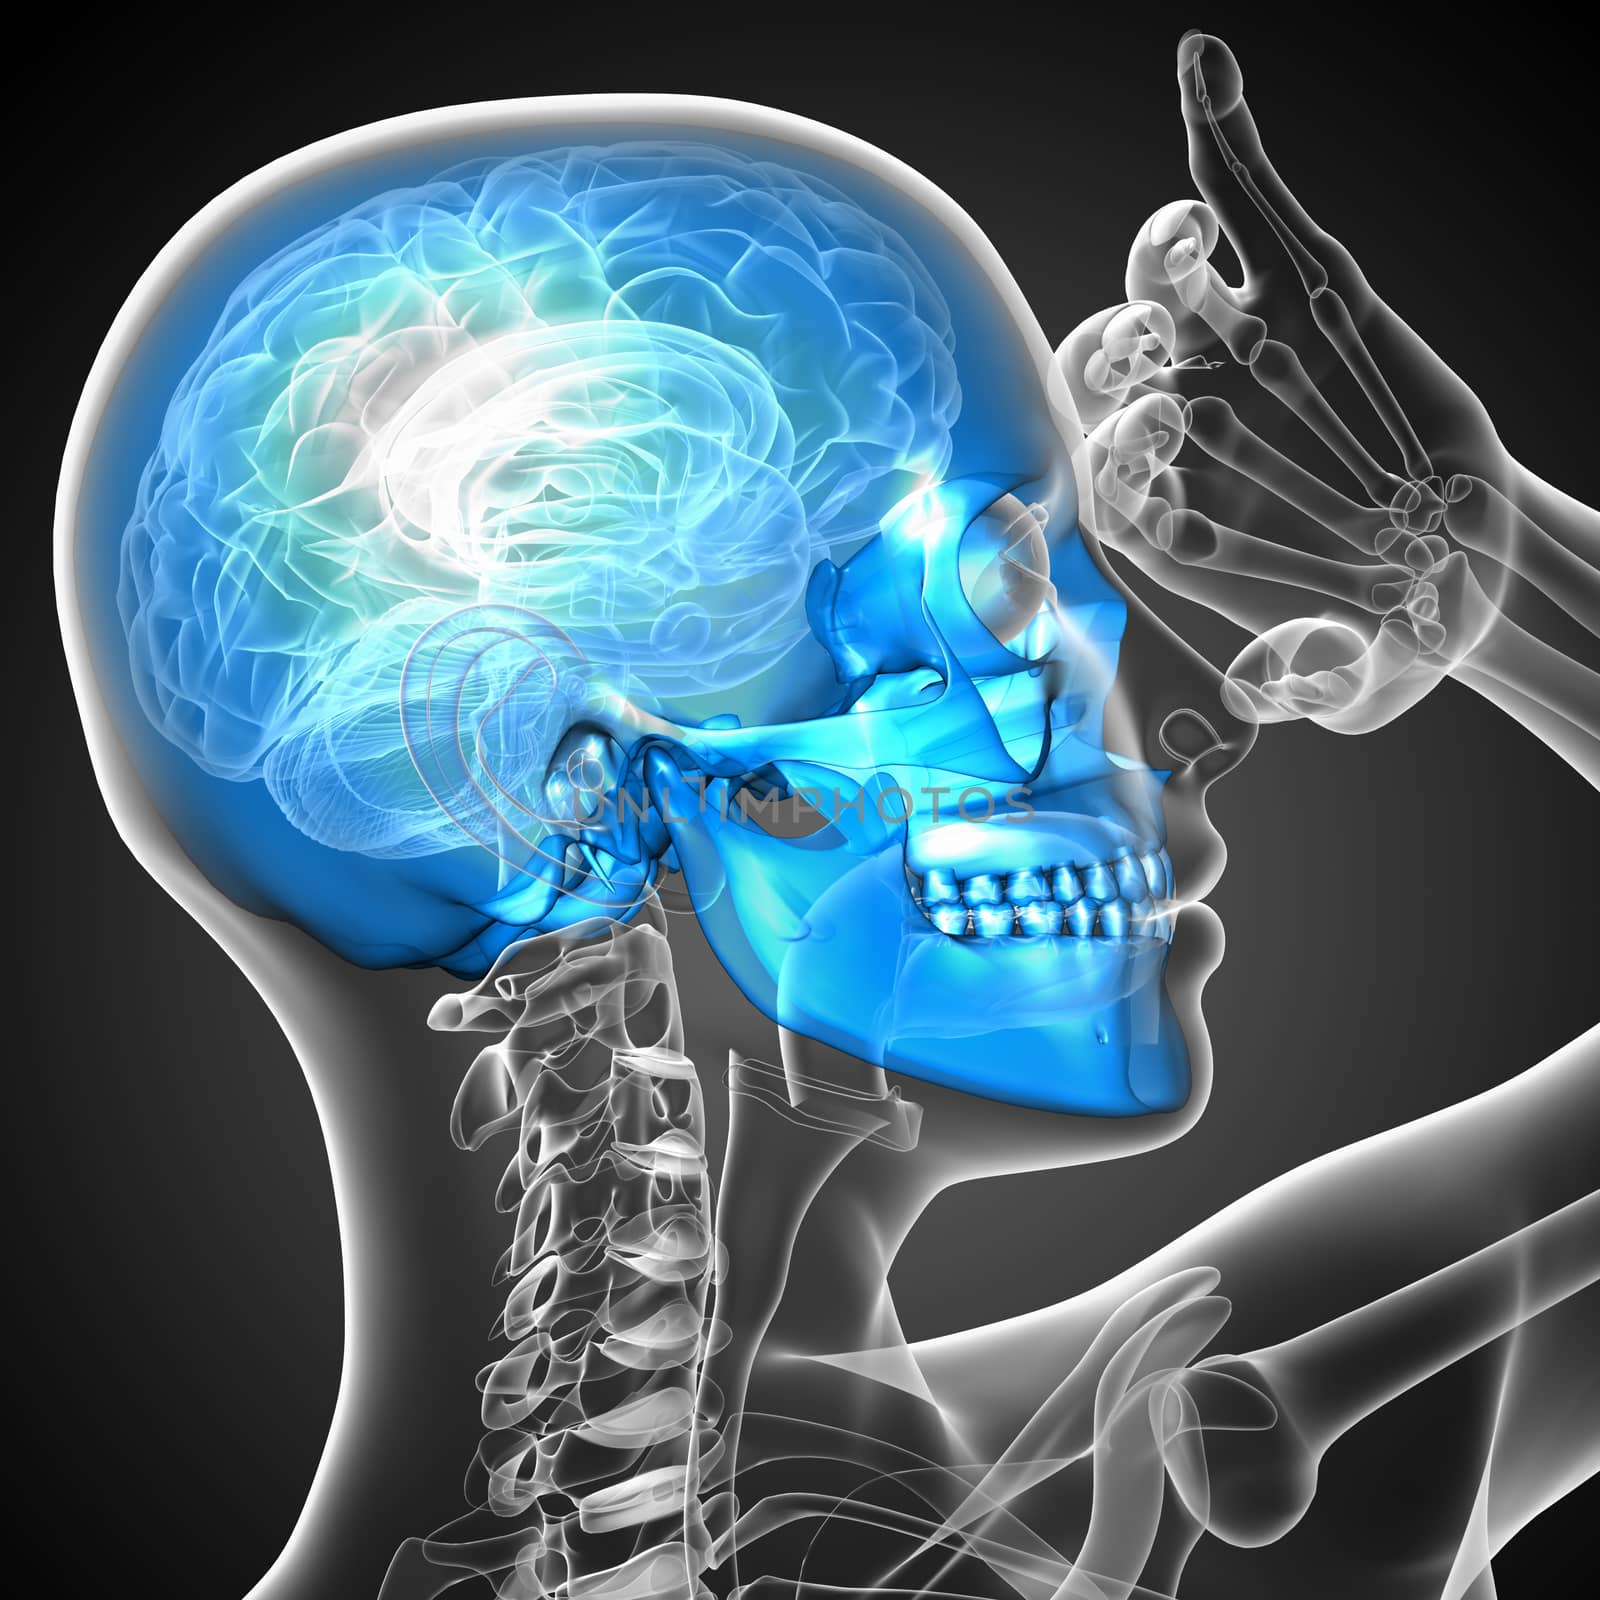 3d render medical illustration of the skull - side view